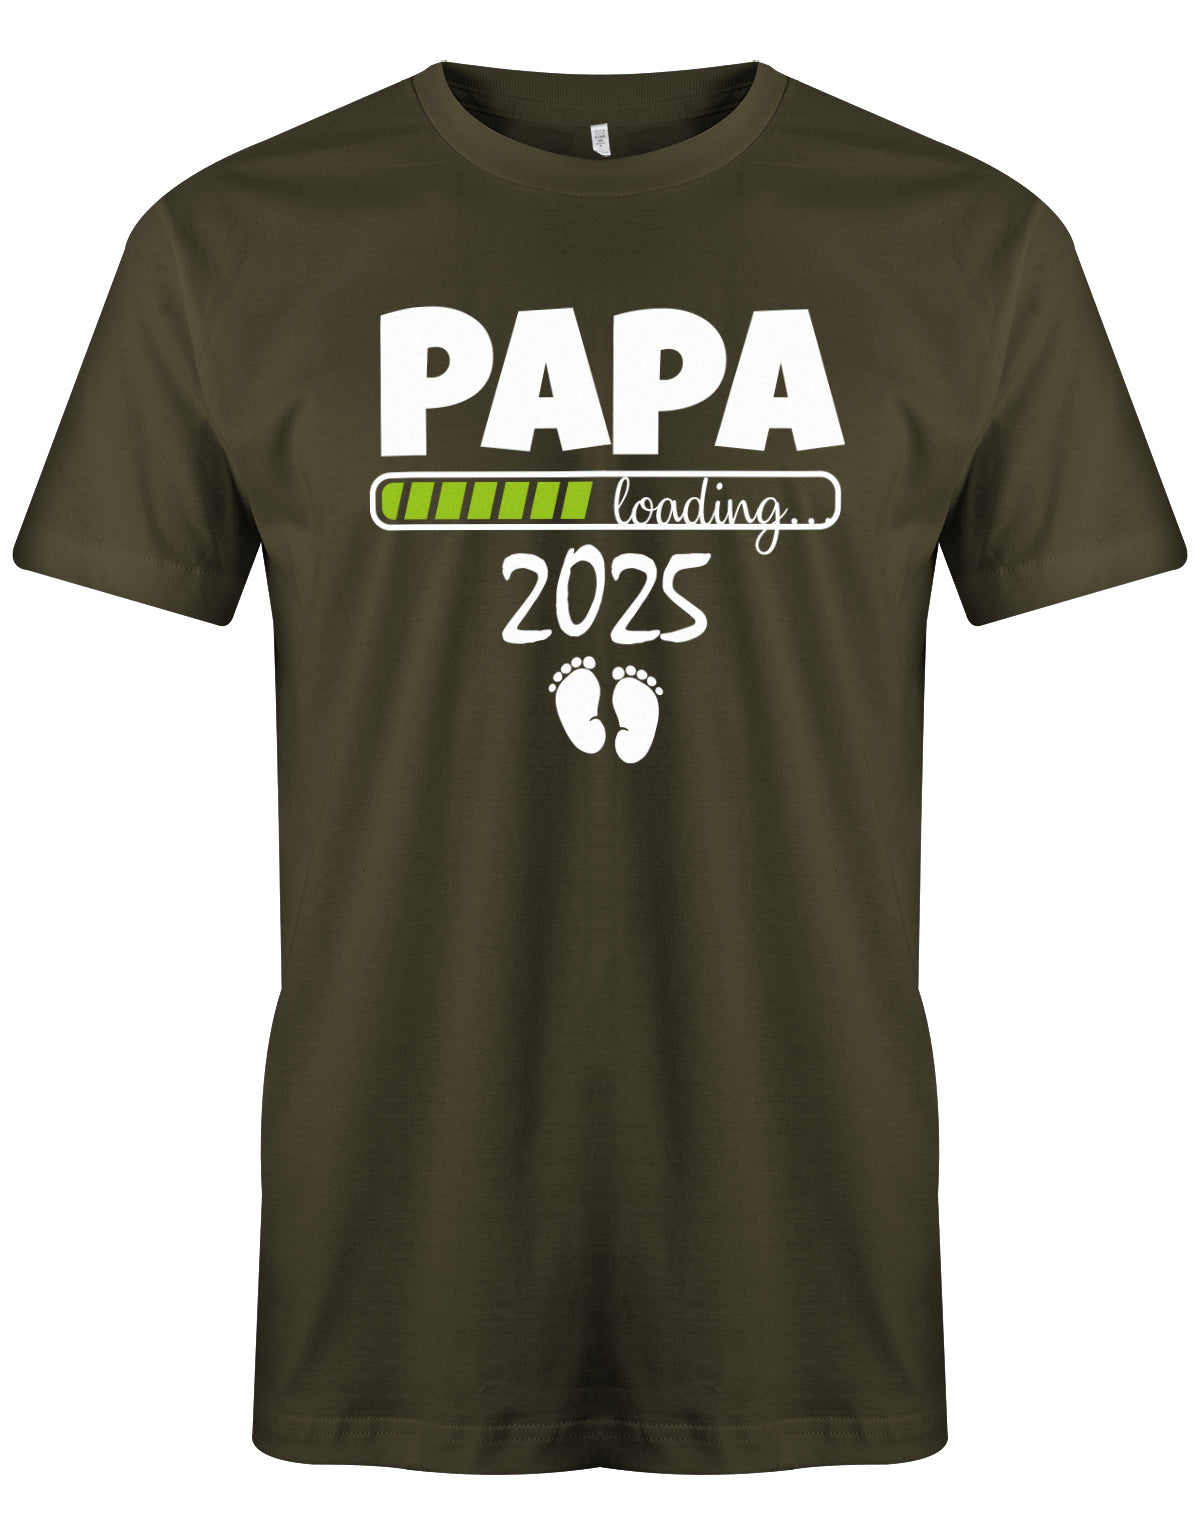 Papa Loading 2025 - Werdender Papa Shirt Herren Army